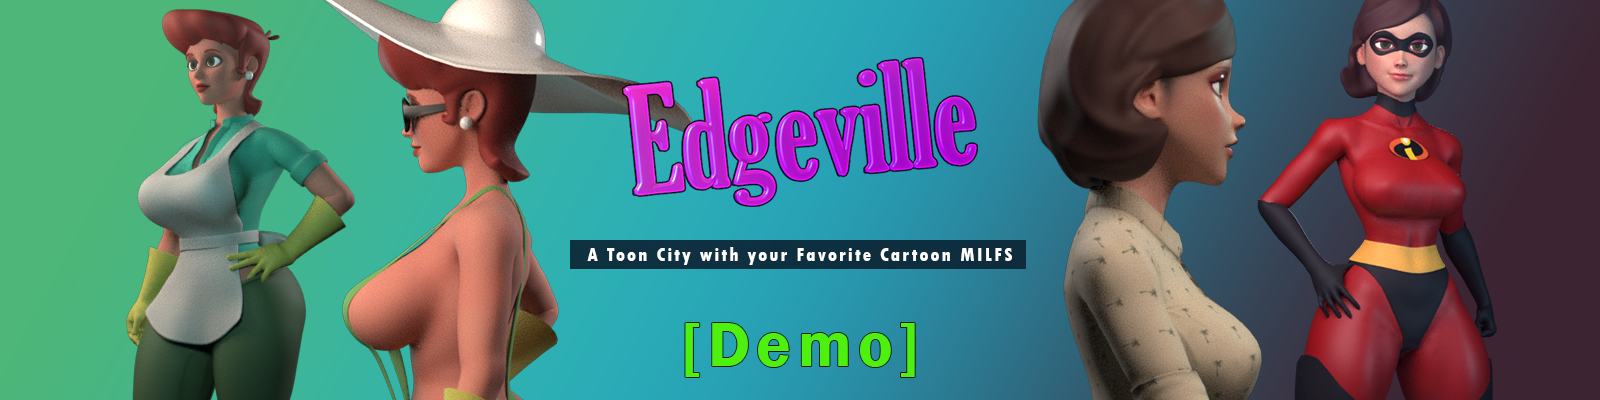 Edgeville Demo